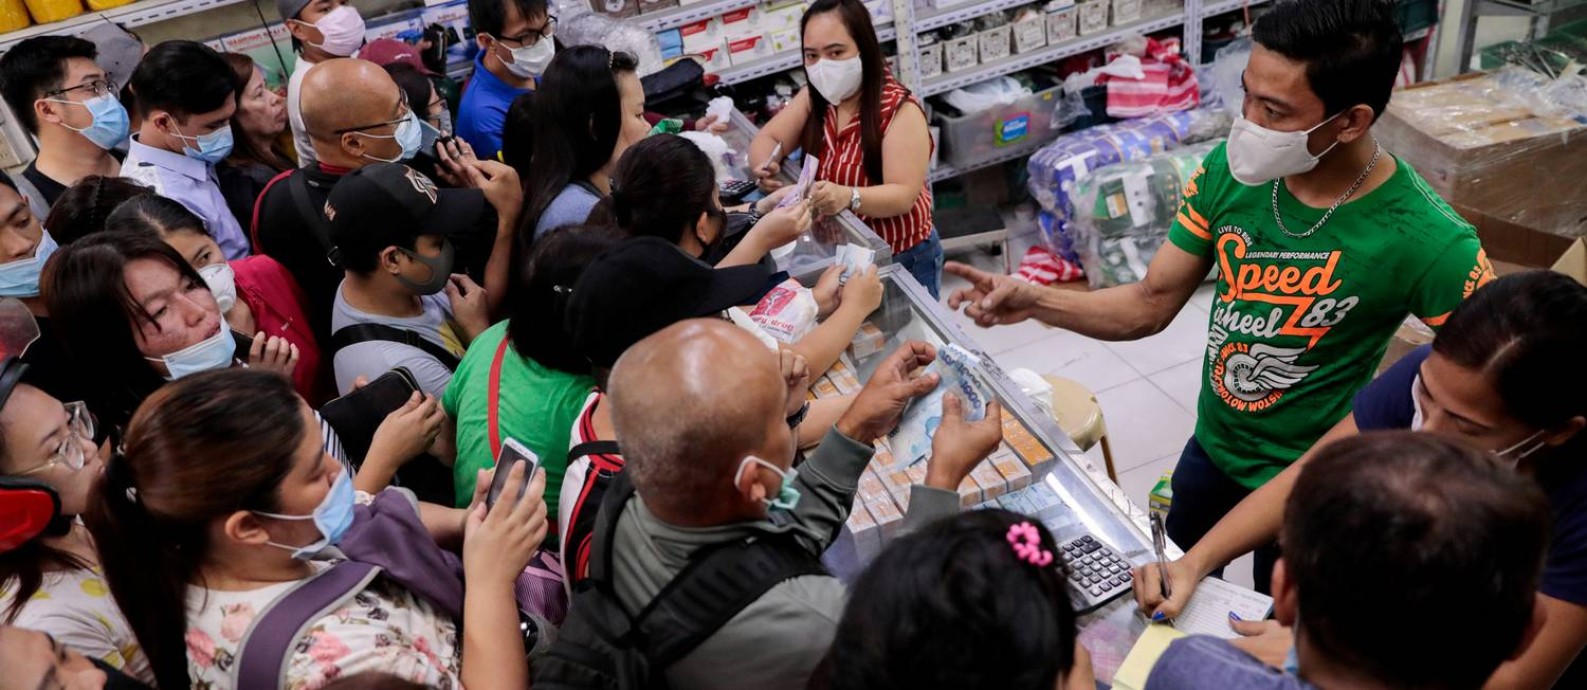 Pessoas se acotovelam em farmácia de Manila, nas Filipinas, para comprar máscaras cirúrgicas Foto: ELOISA LOPEZ / REUTERS